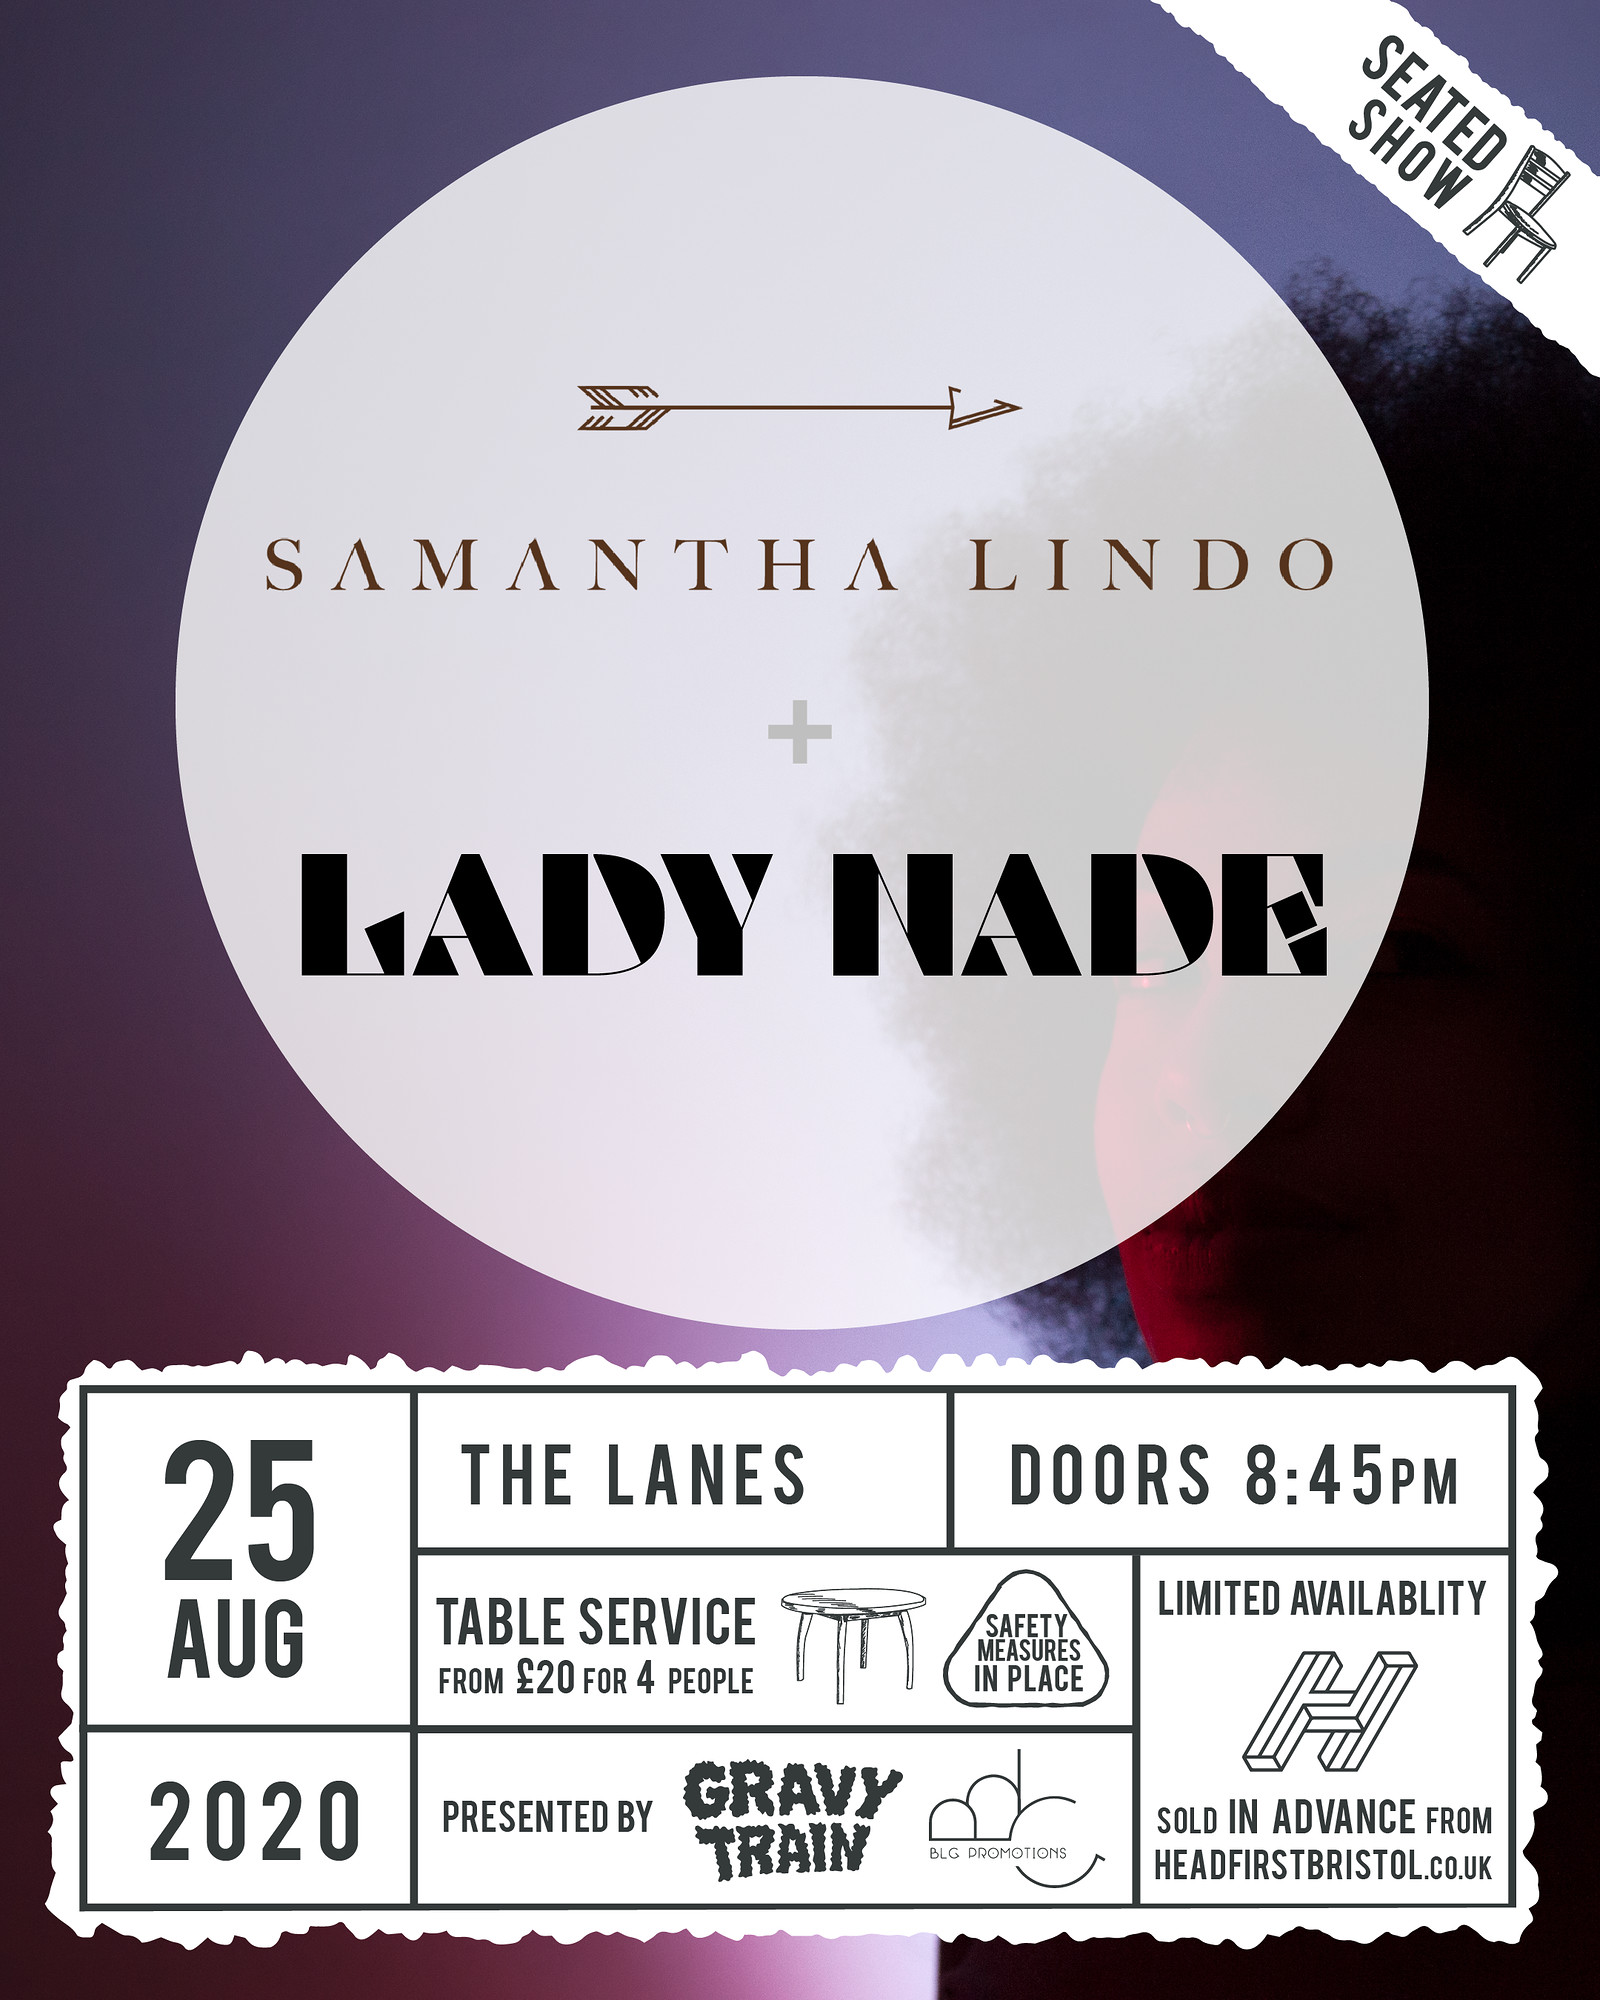 SAMANTHA LINDO + LADY NADE at The Lanes